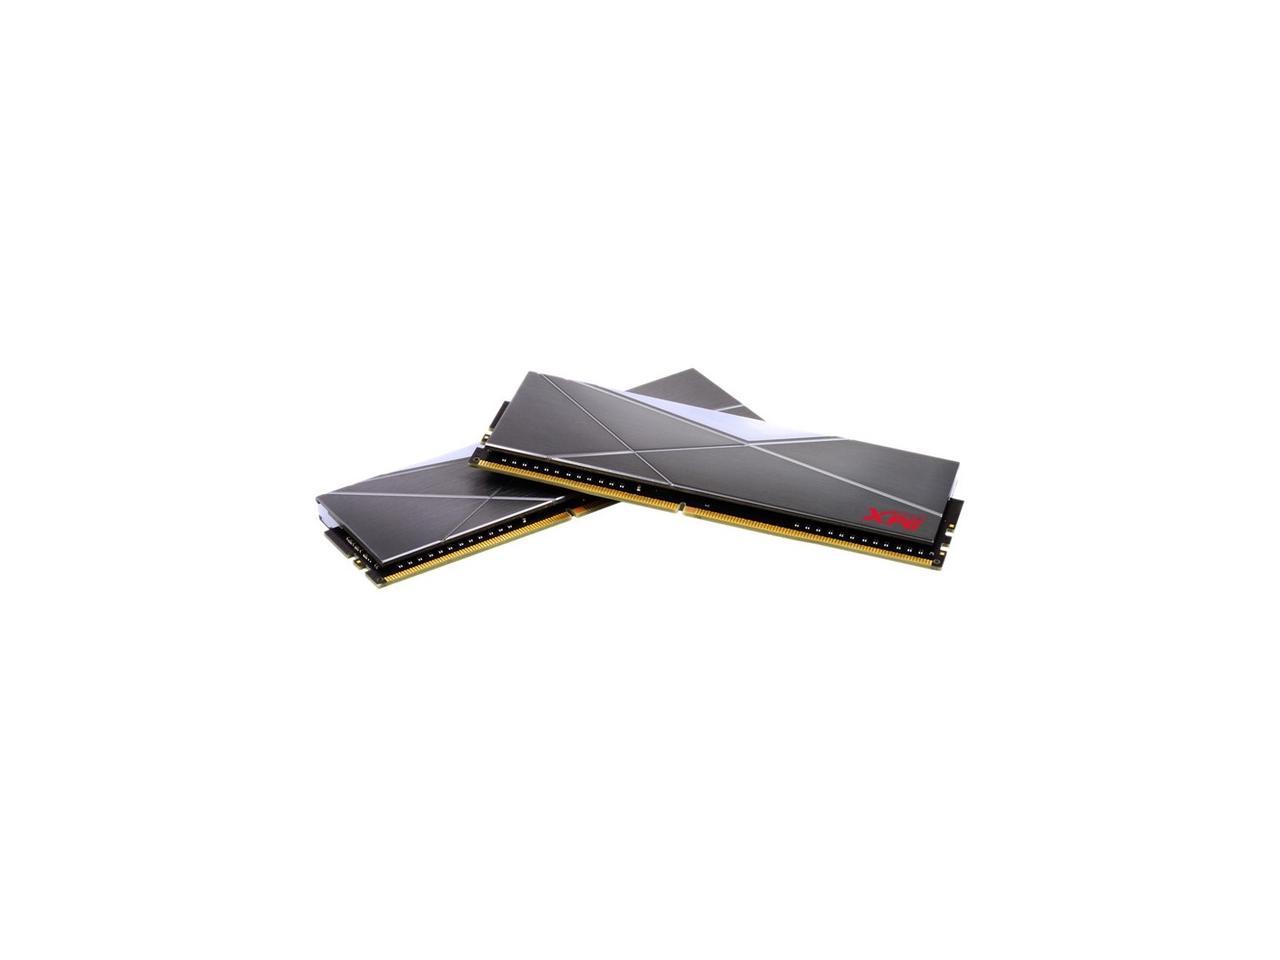 XPG SPECTRIX D50 16GB (2 x 8GB) DDR4 3600 (PC4 28800) CL18 RGB Desktop Memory AX4U360038G18A-DT50